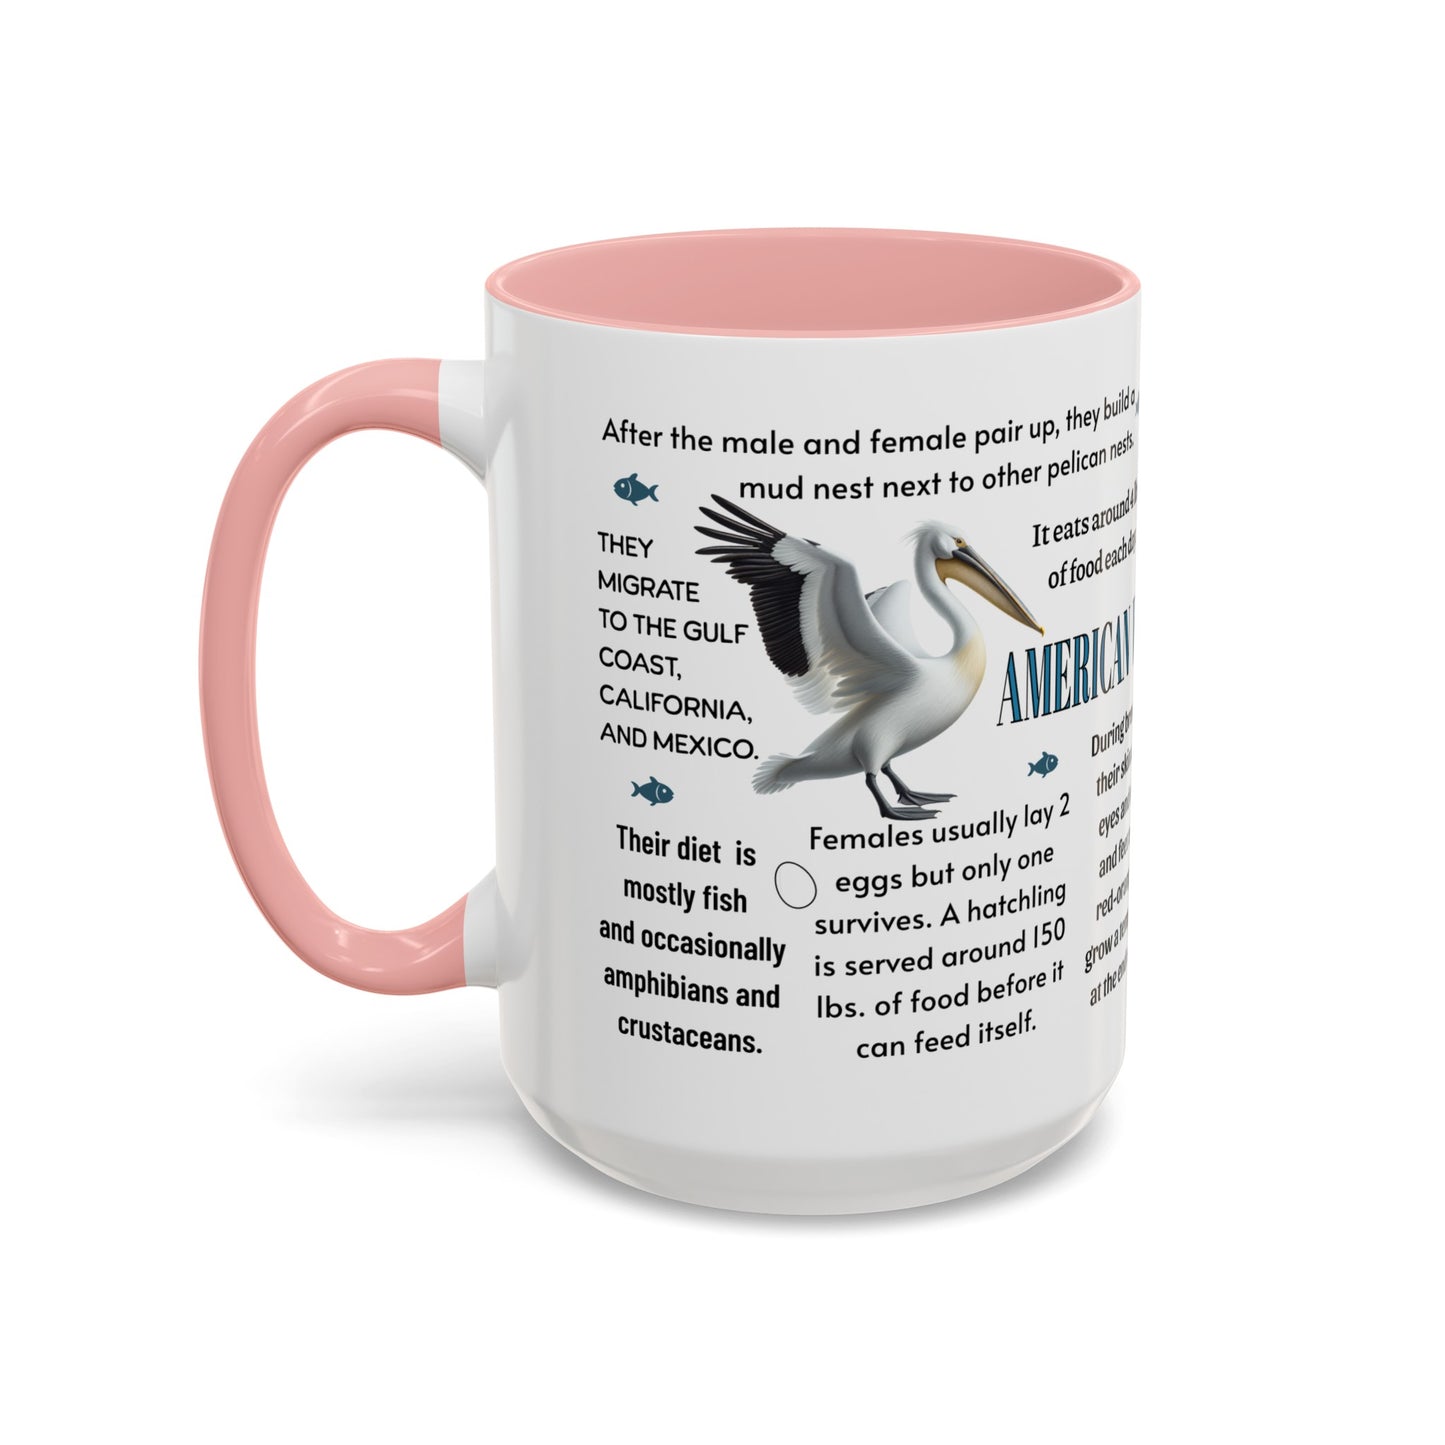 American White Pelican Coffee Mug, 11 oz or 15oz